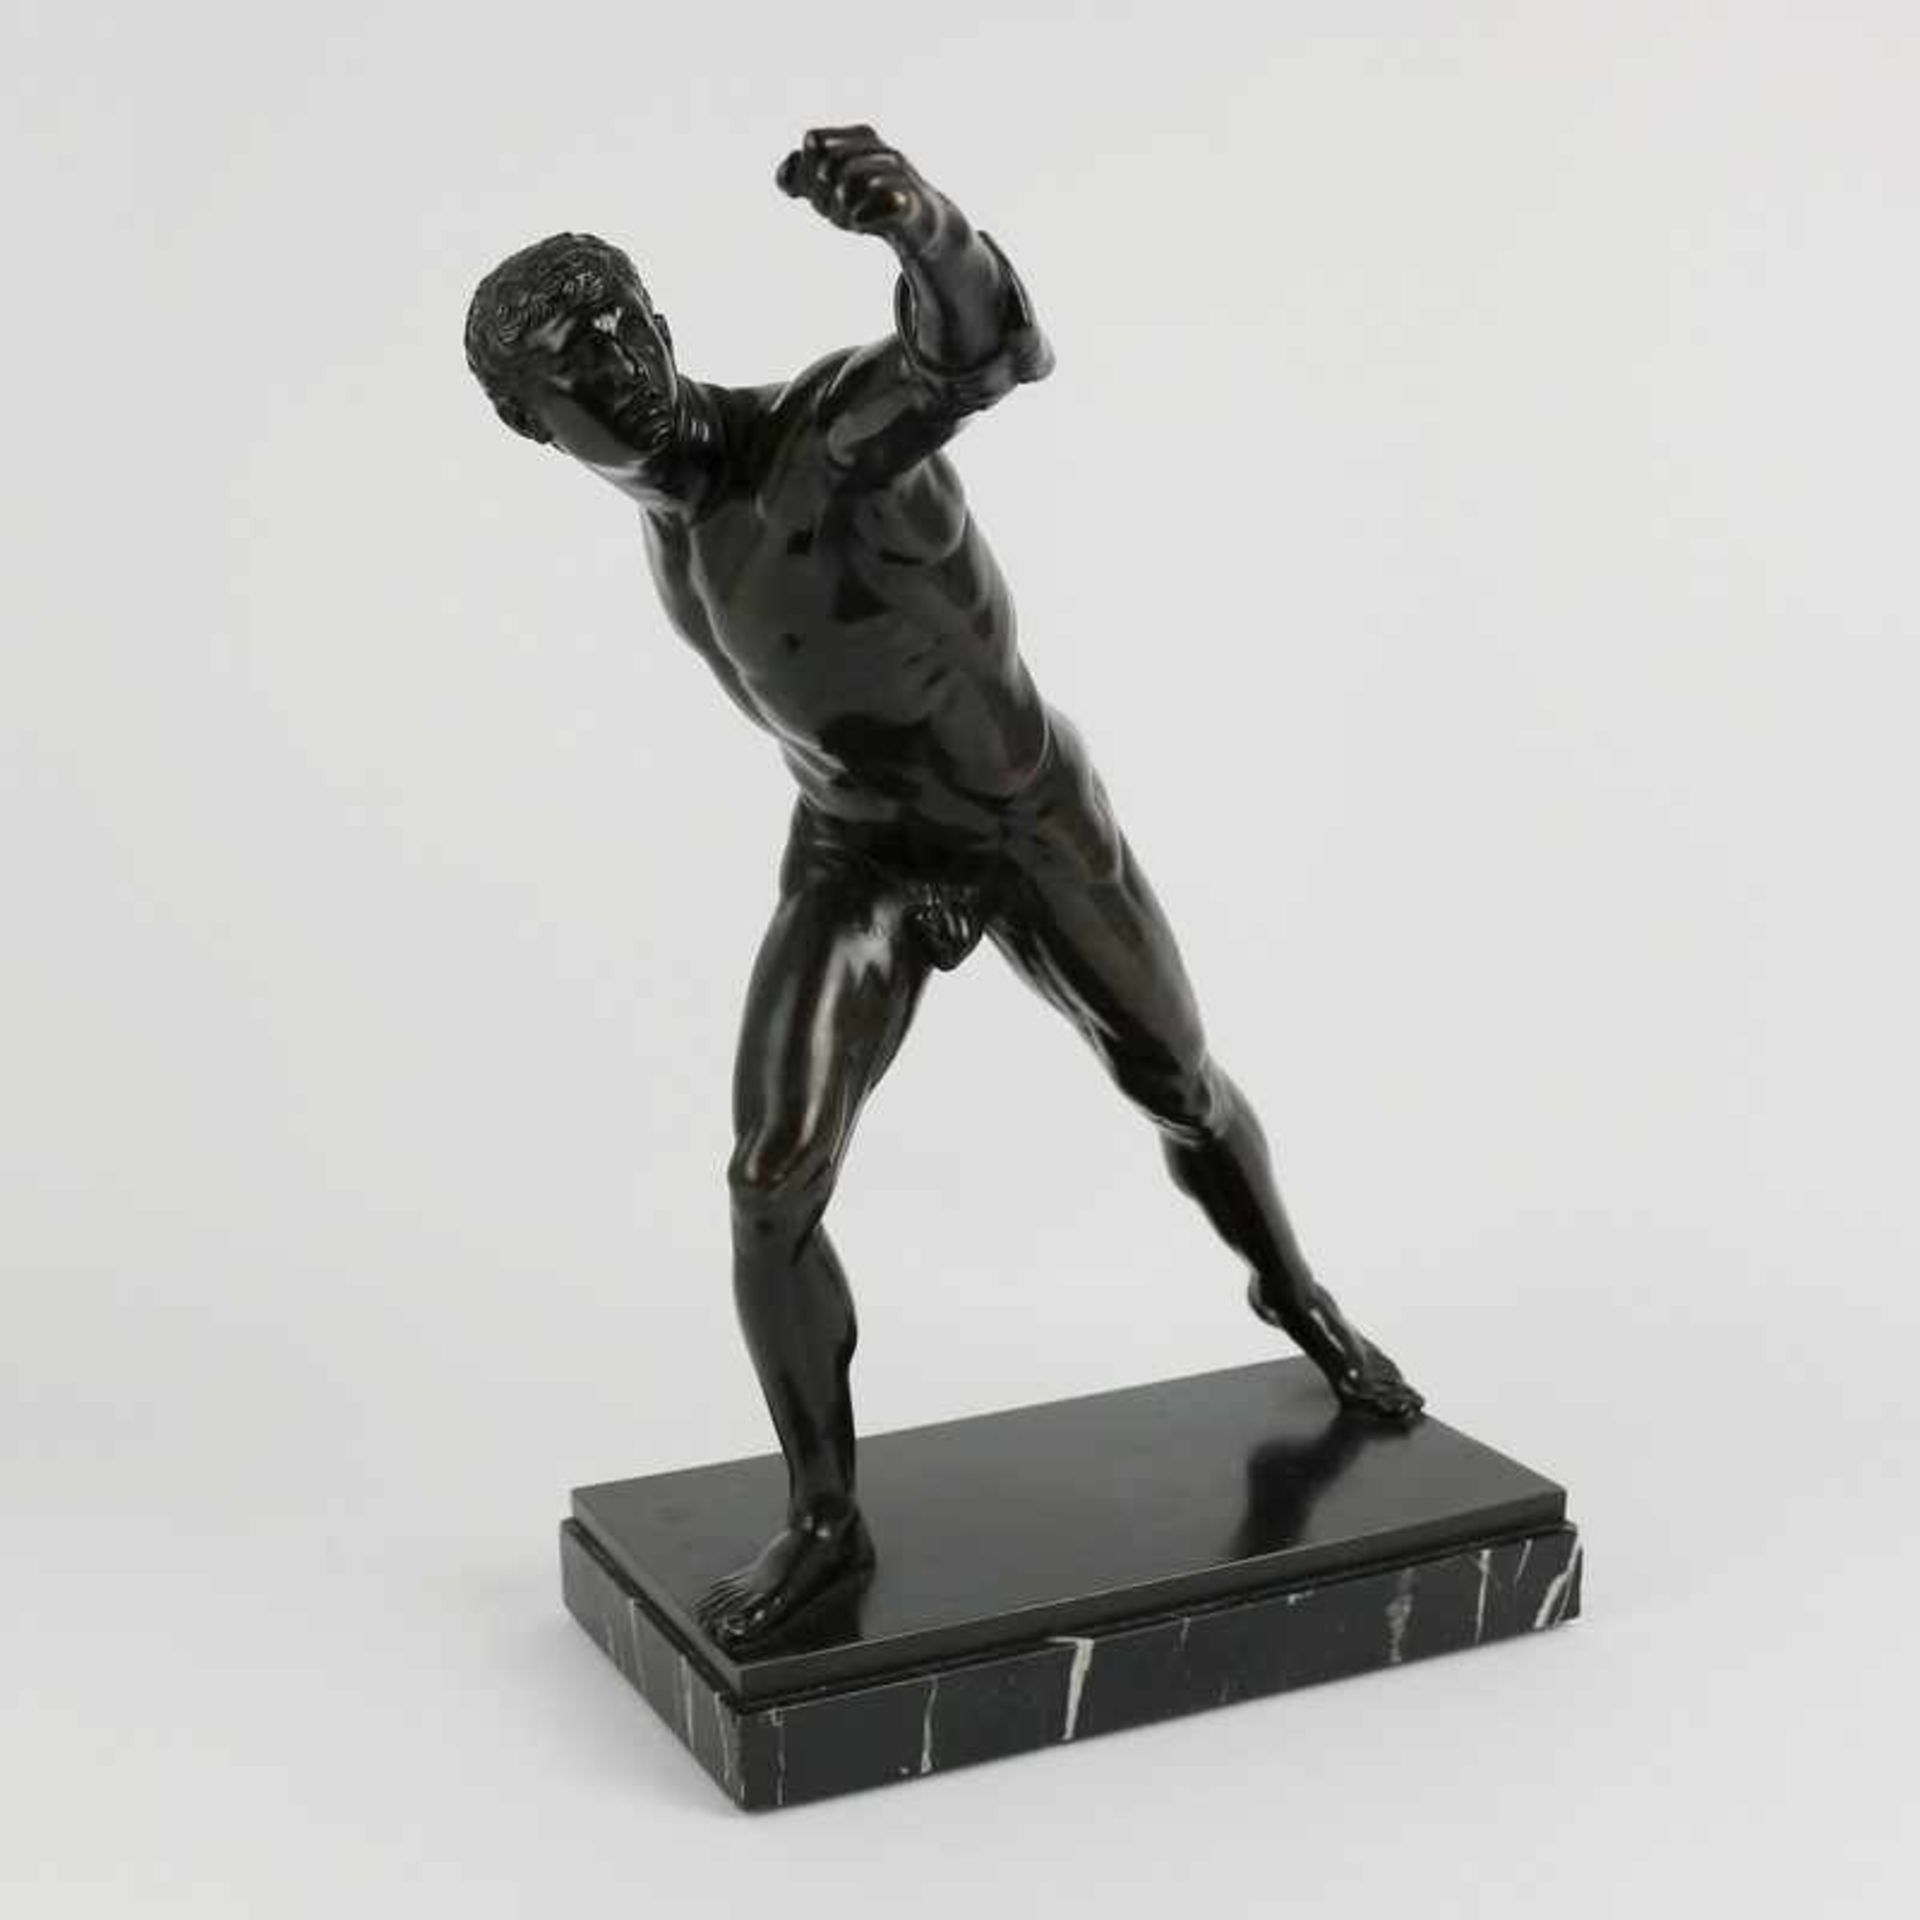 Bronzeplastik um 1910/20, patiniert, vollplastische Figur, Borghesischer Fechter, nach antikem